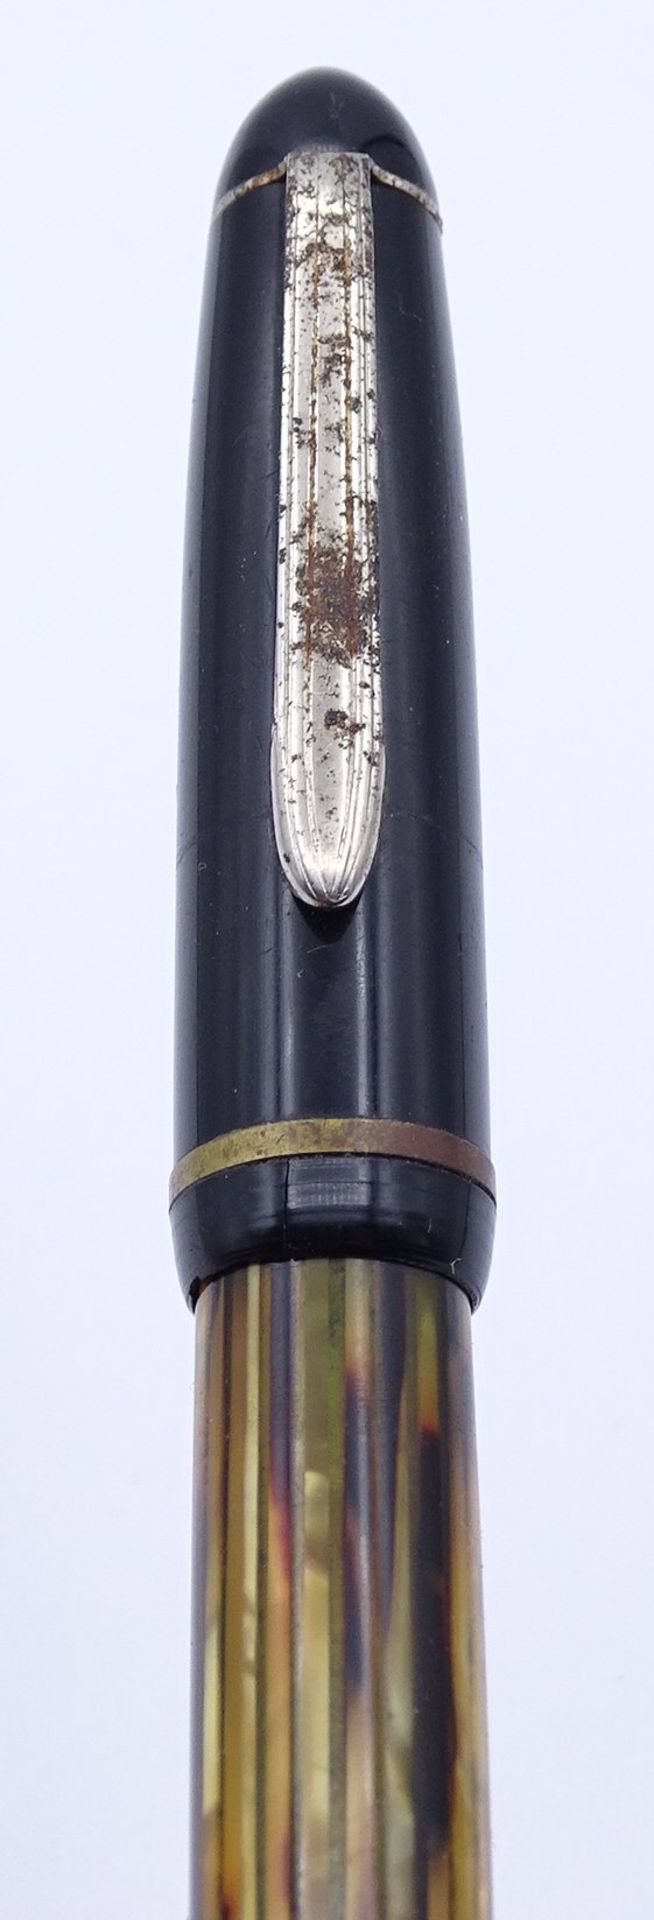 Pelikan Füller, GG Feder 585/000 Stärke F, Gebrauchsspuren, Deckel wohl nicht passend - Bild 5 aus 5